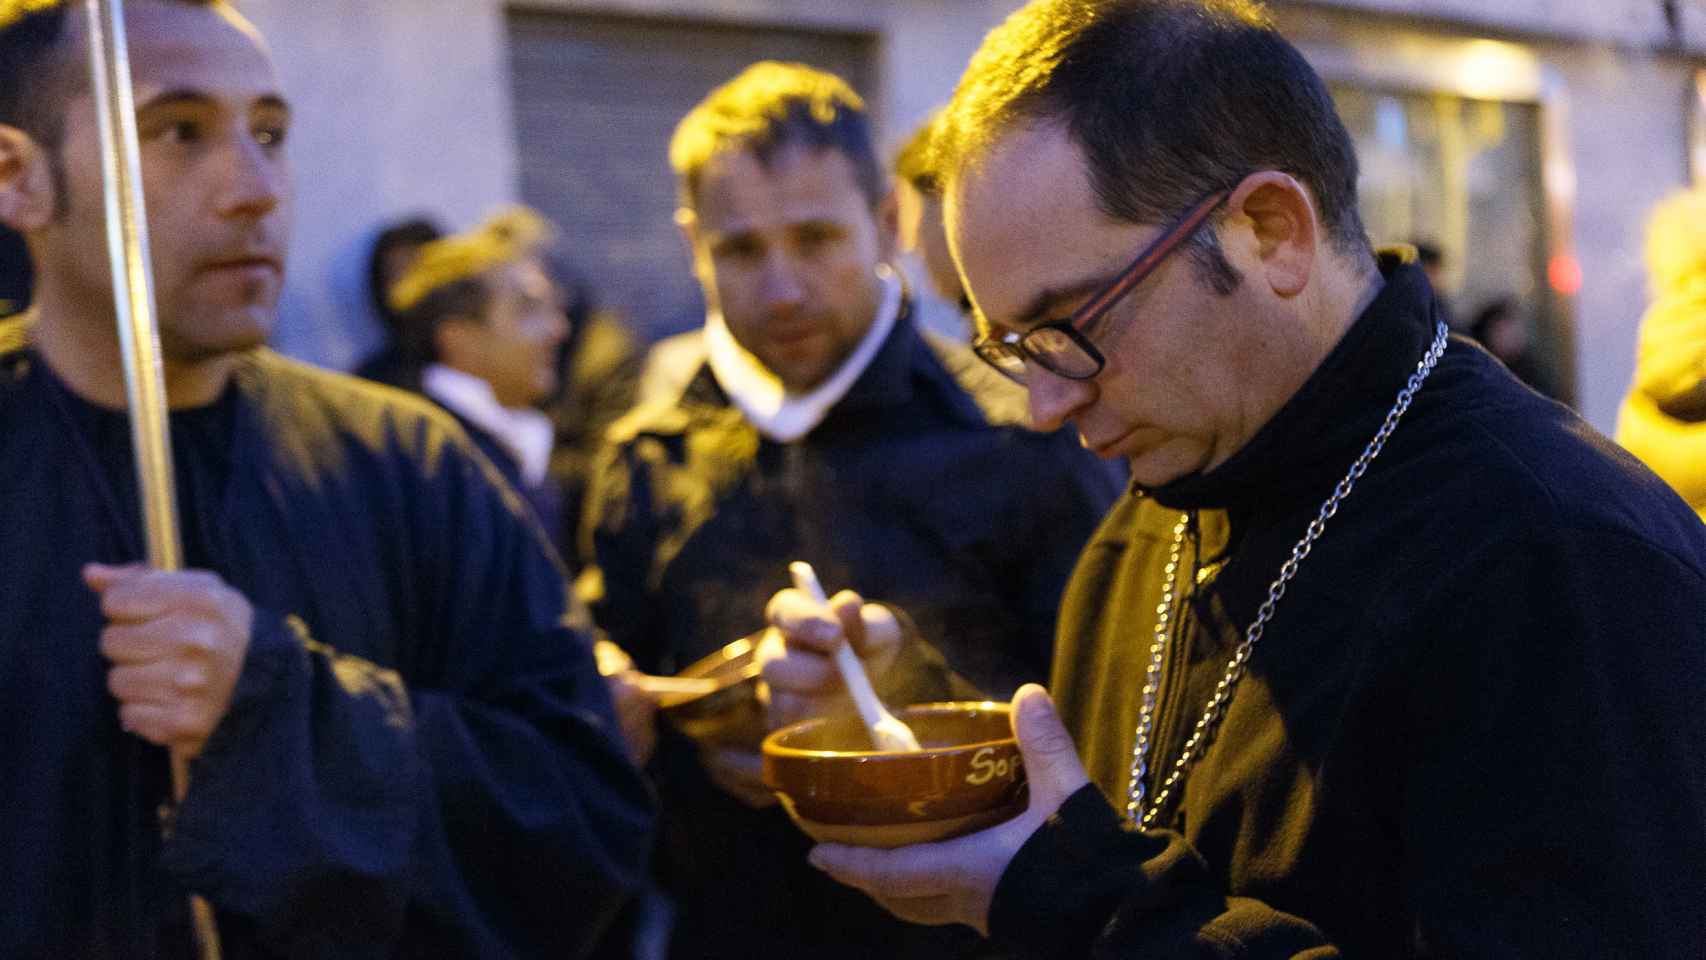 Unos cofrades degustan unas sopas de ajo durante el descanso del desfile procesional de la Cofradía de Jesús Nazareno Vulgo Congregación